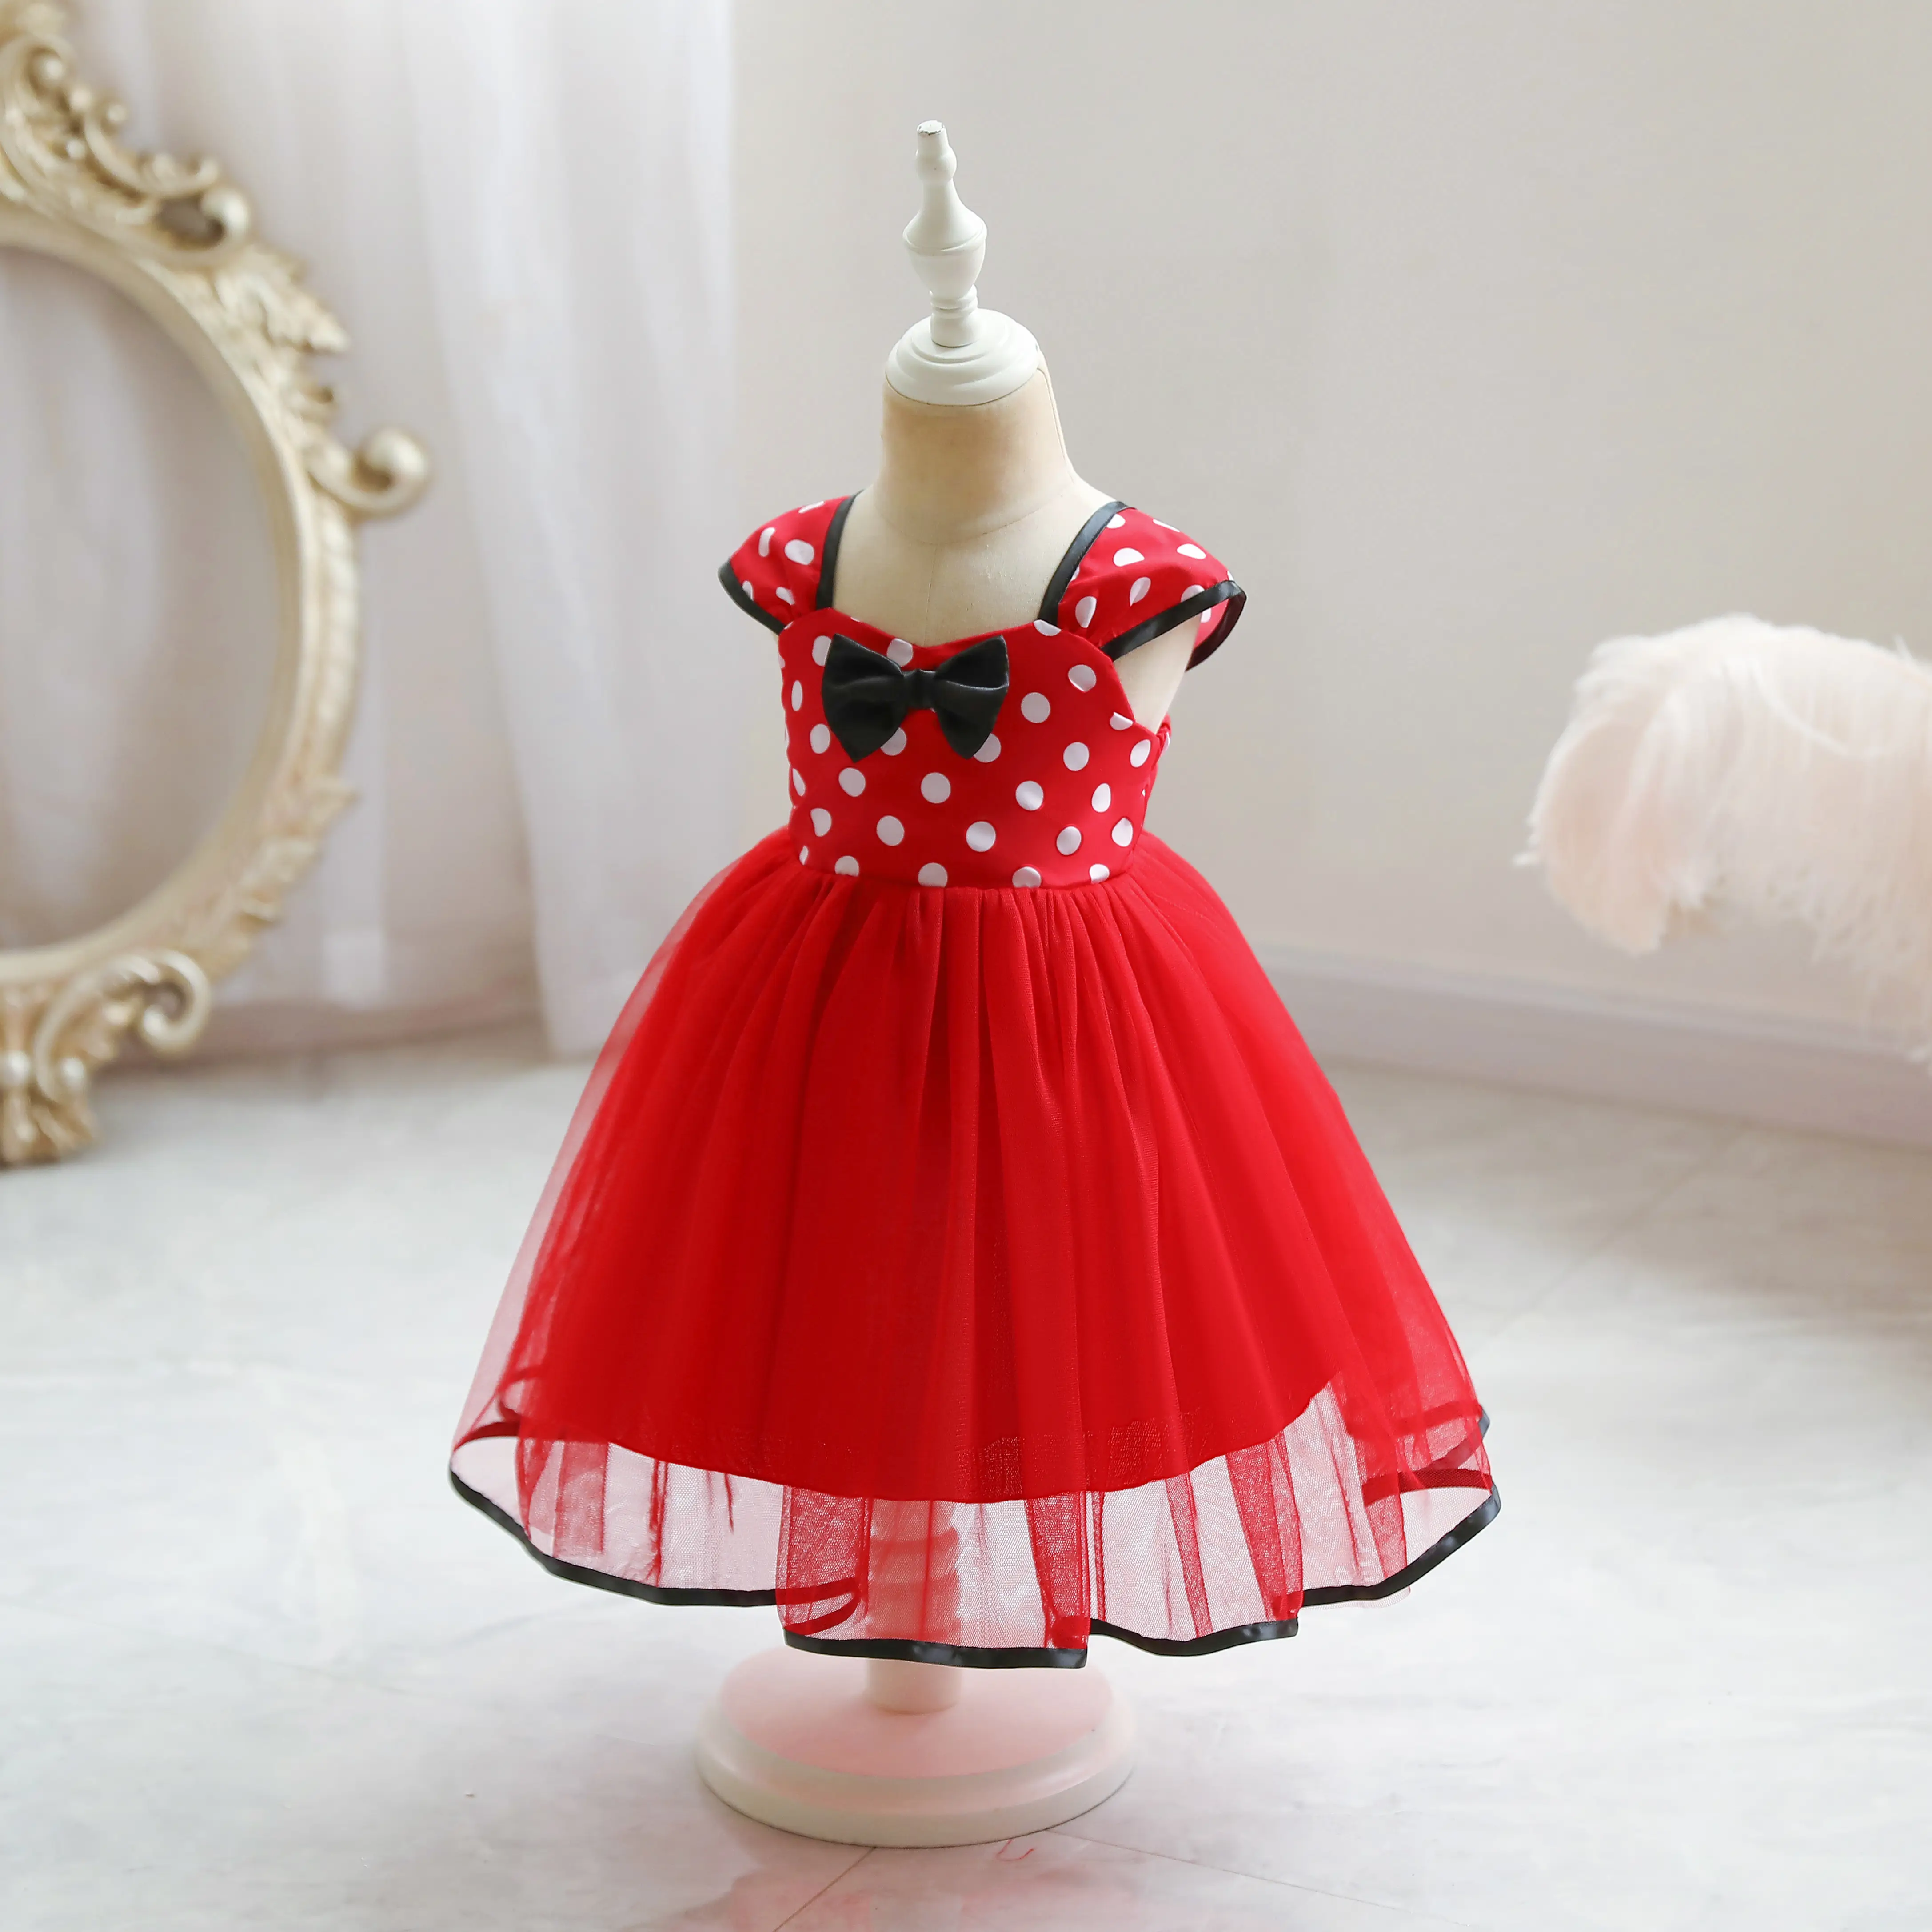 Mini ratón bebé niña vestido Cosplay disfraz para niñas FIESTA DE Navidad vestidos de princesa niños cumpleaños Dot ropa linda LY011 encaje